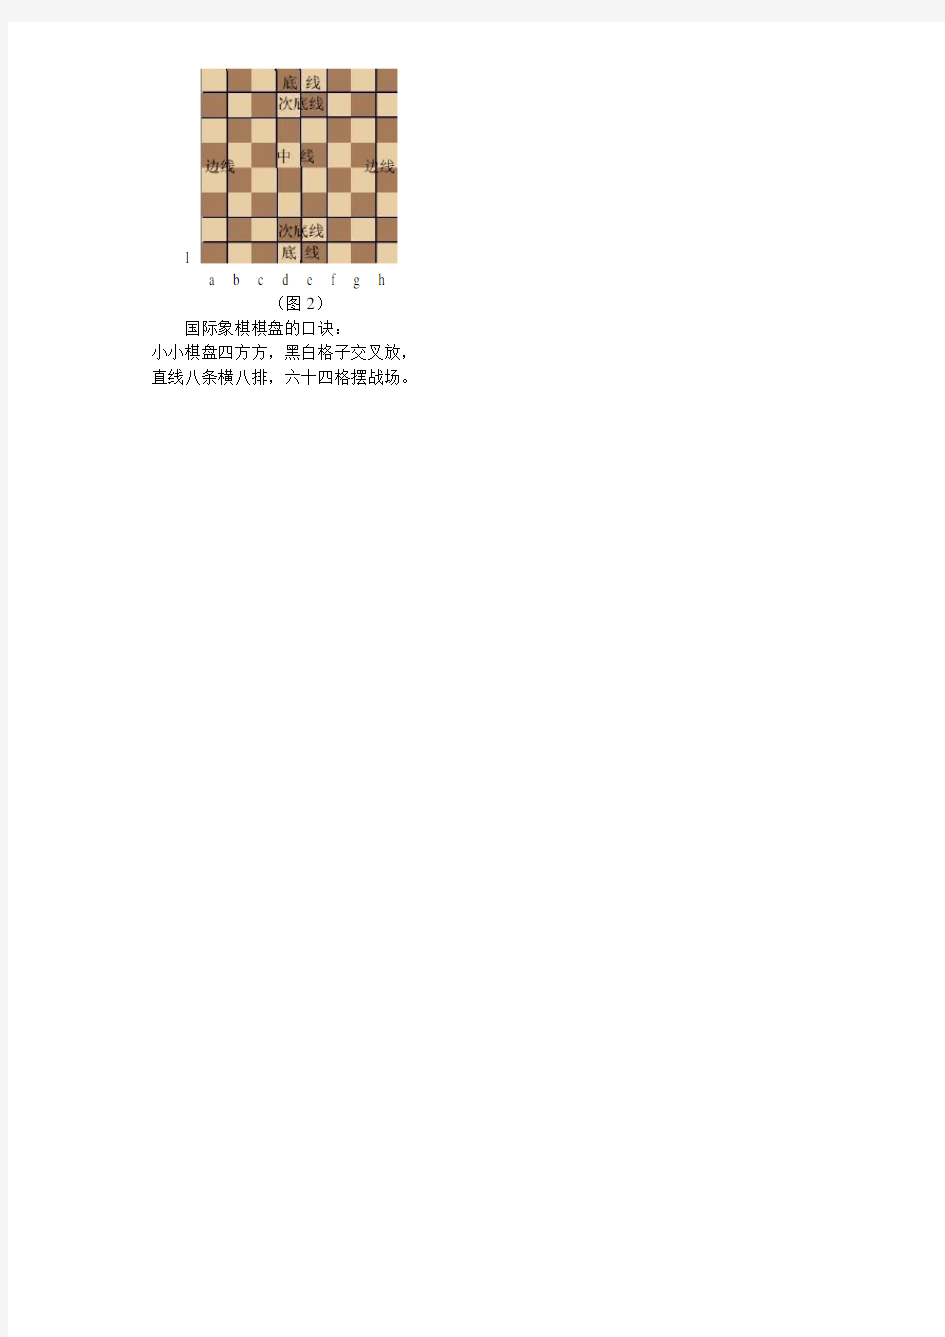 第一课 国际象棋基础知识